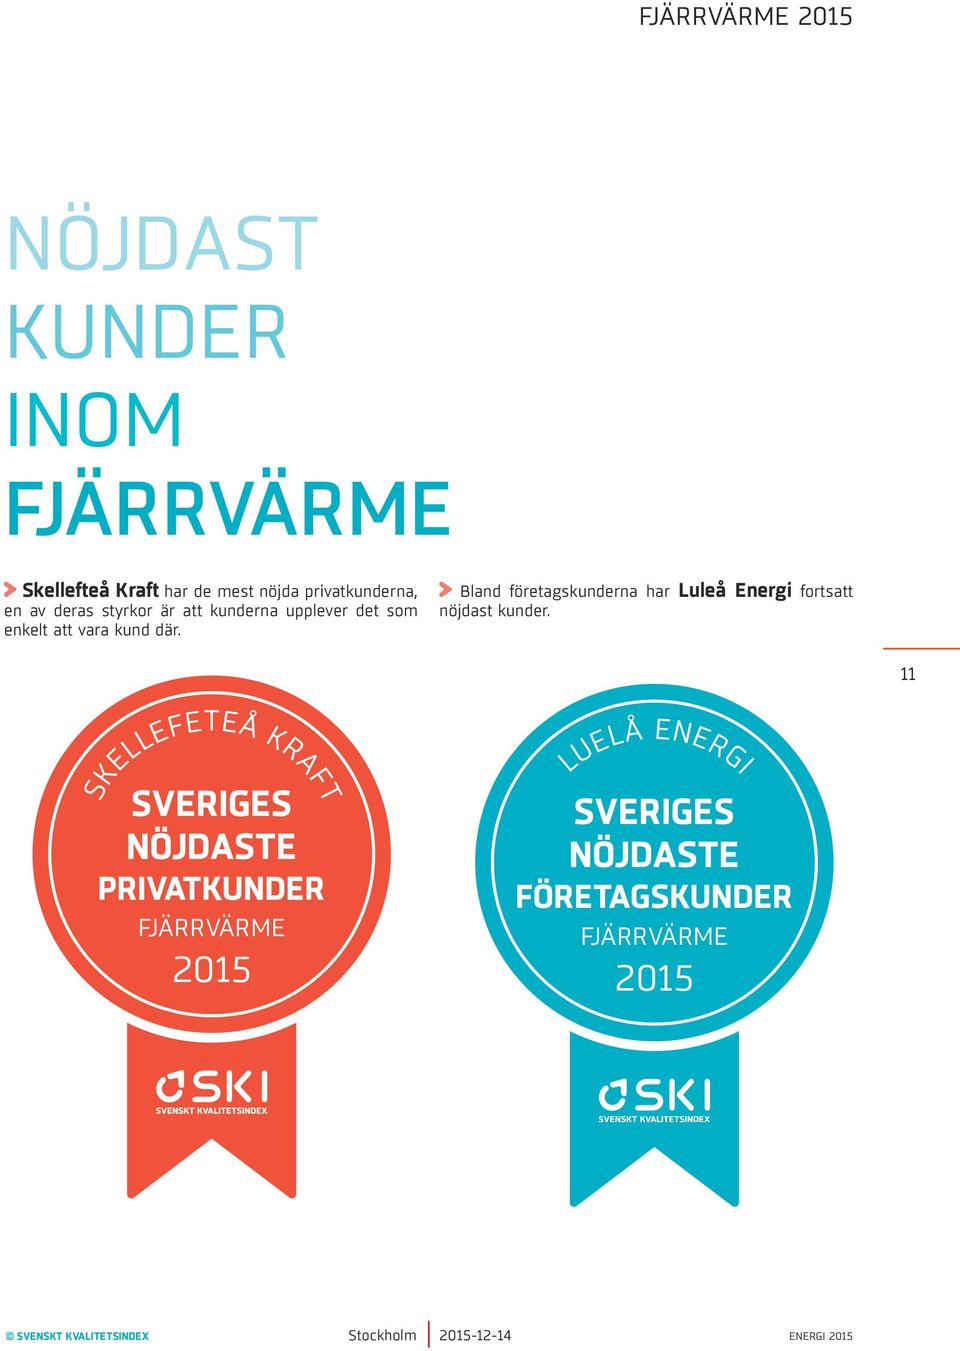 kund där. Bland företagskunderna har Luleå Energi fortsatt nöjdast kunder.